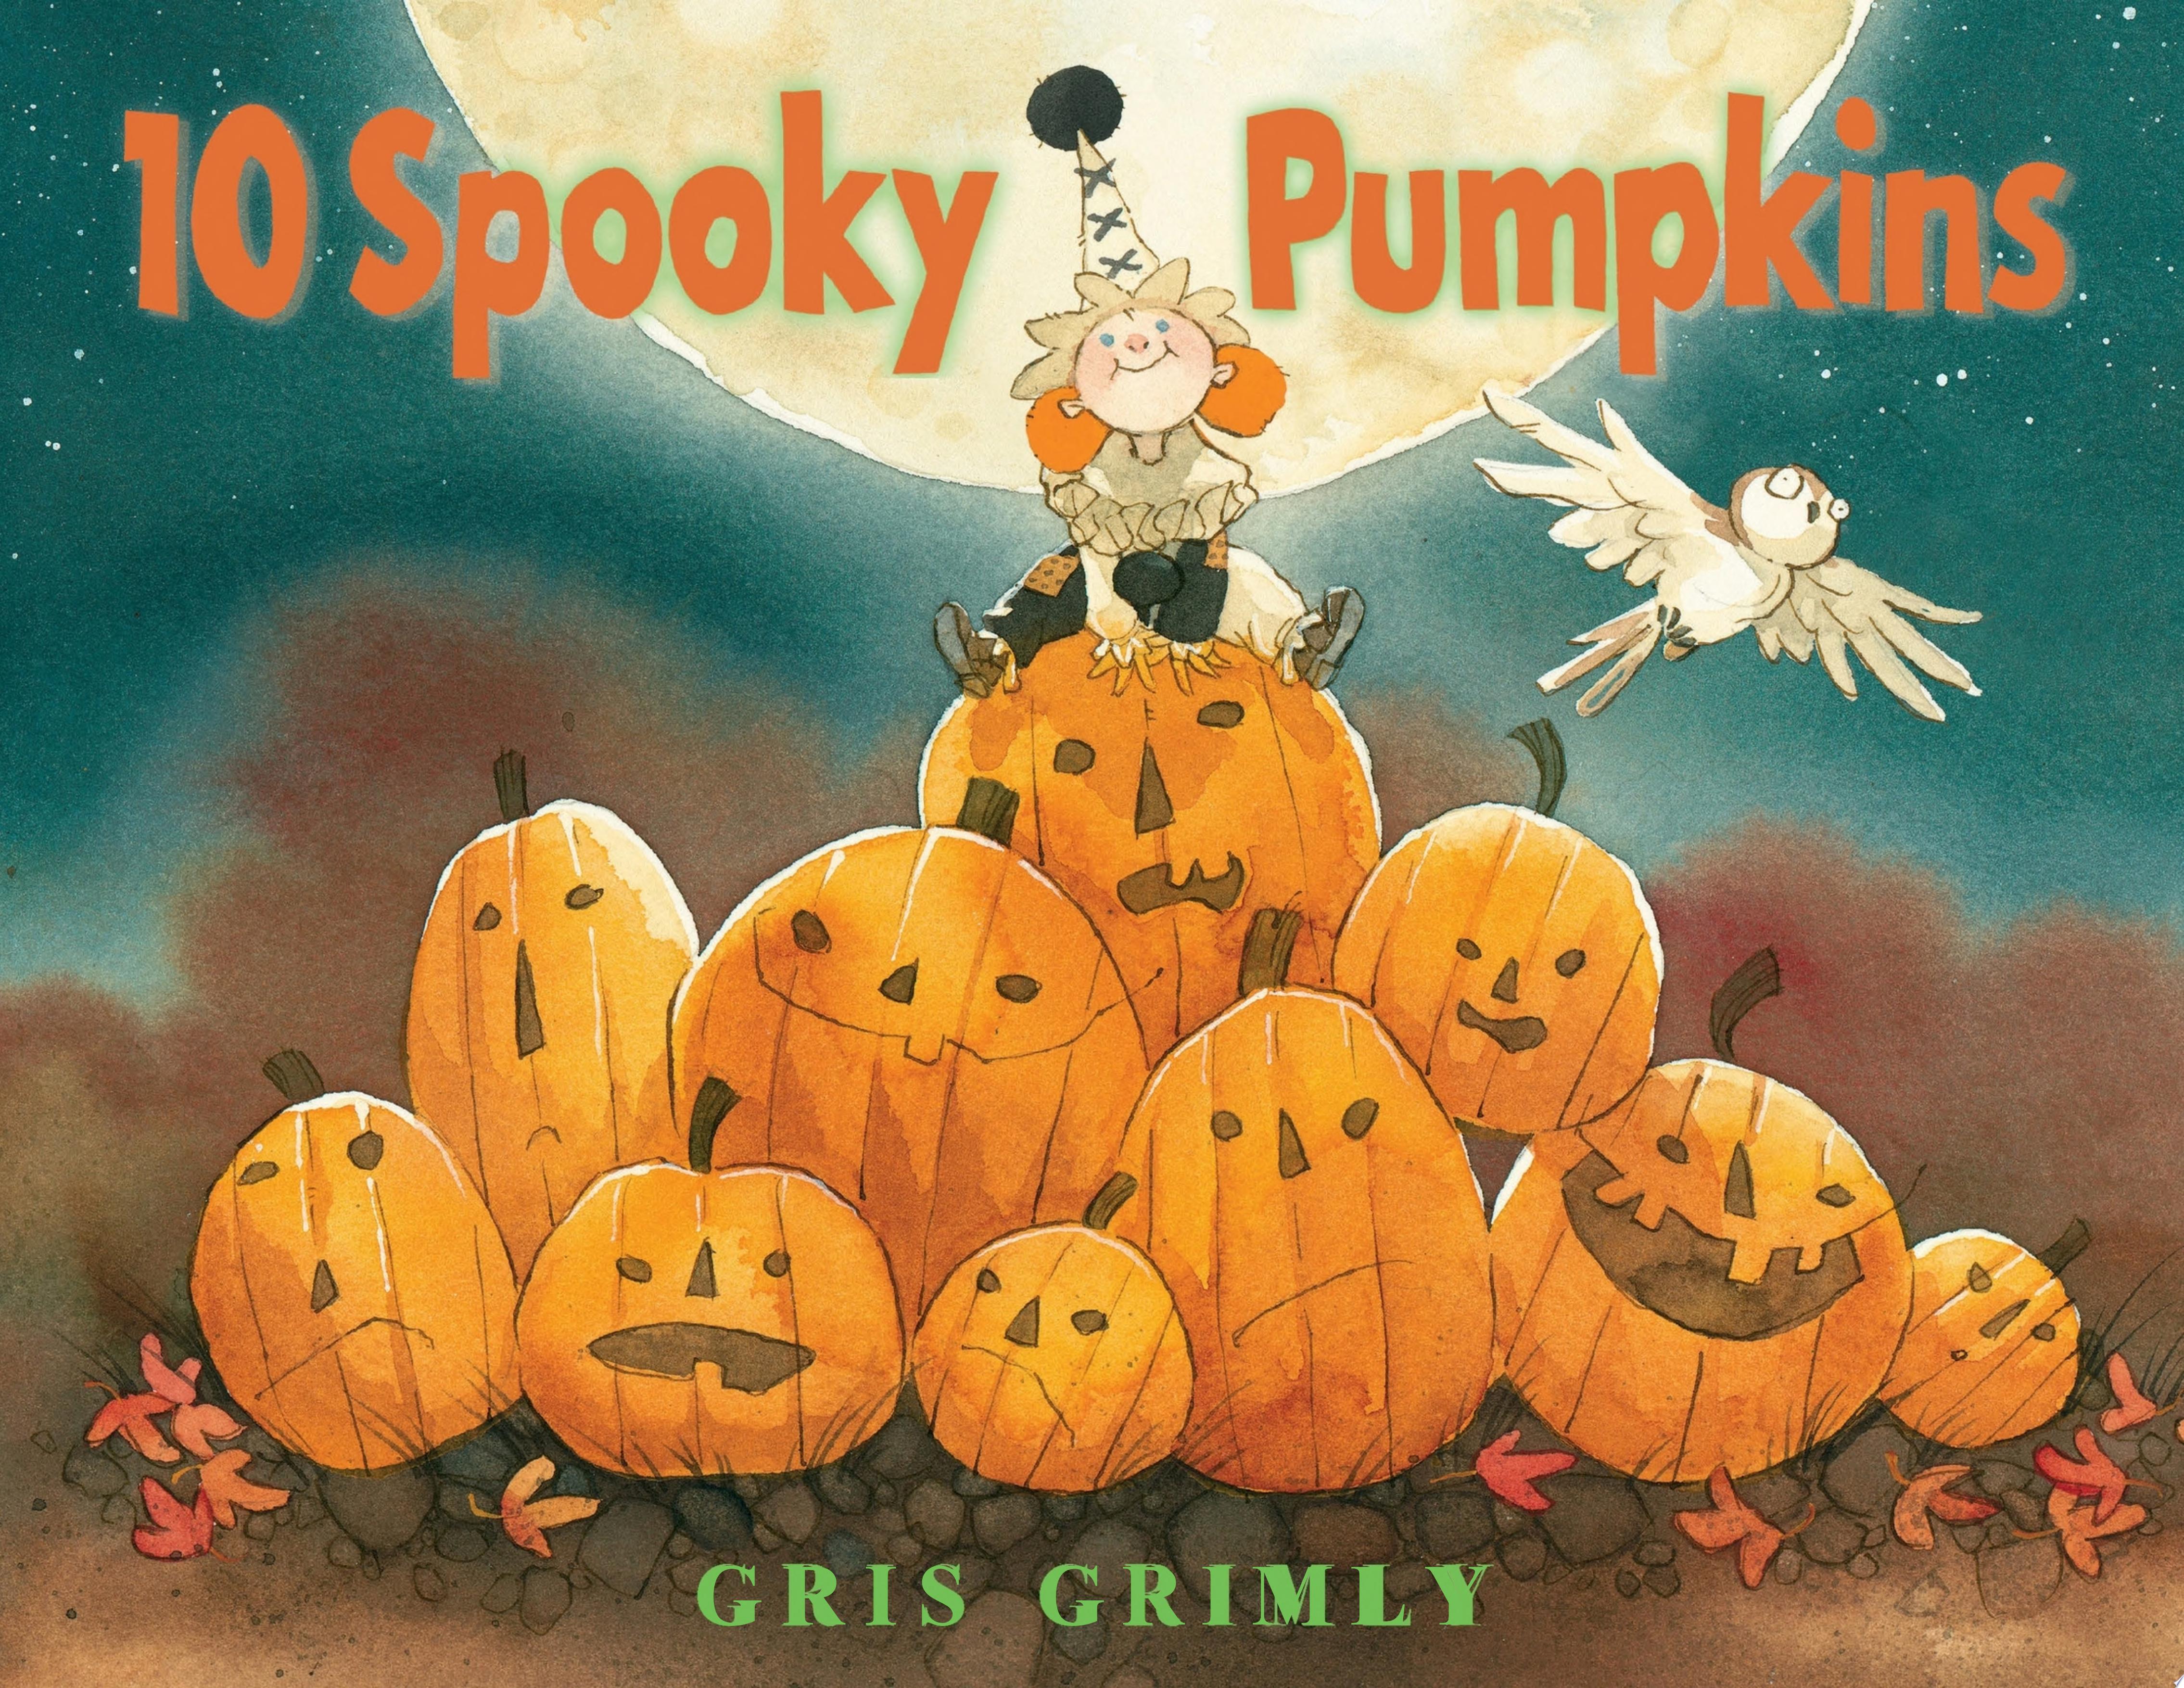 Image for "Ten Spooky Pumpkins"